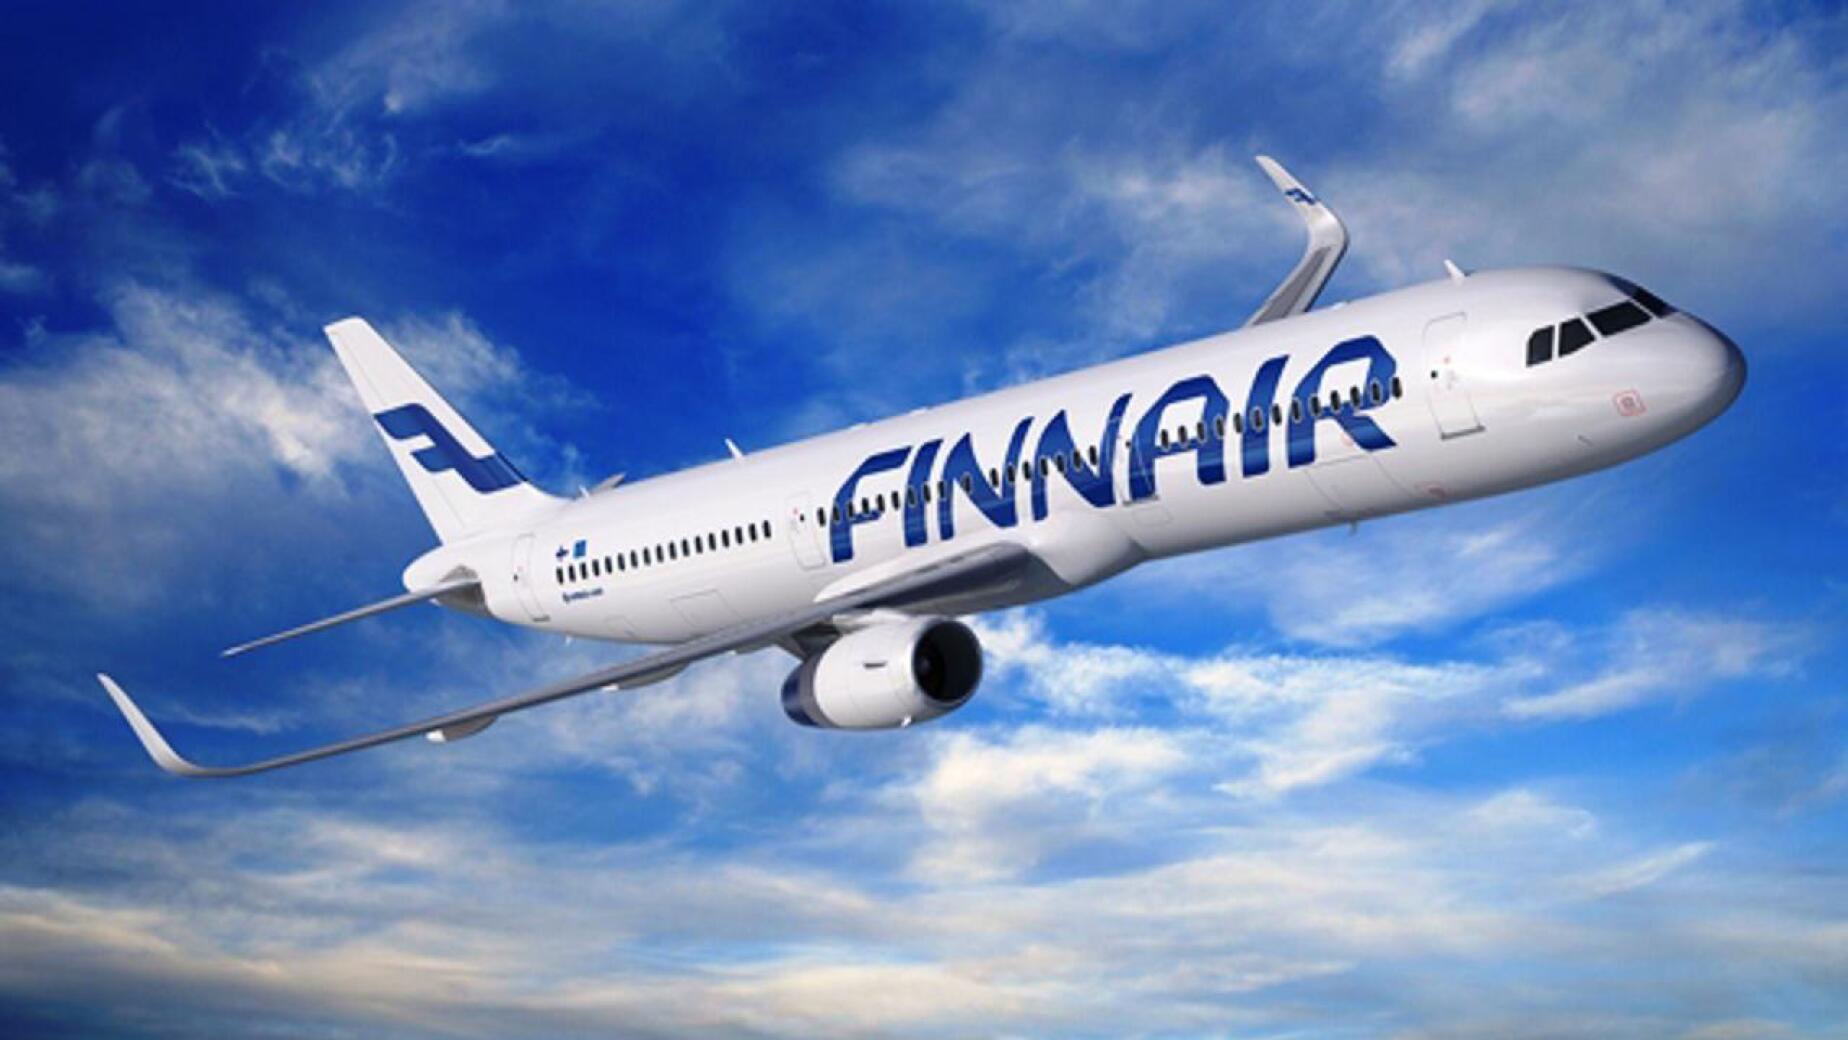 Lentoyhtiö Finnairin matkustamohenkilökunta järjestää viikonvaihteessa ulosmarssin, kertoi Auto- ja Kuljetusalan Työntekijäliitto AKT tiedotteessaan lauantaina.